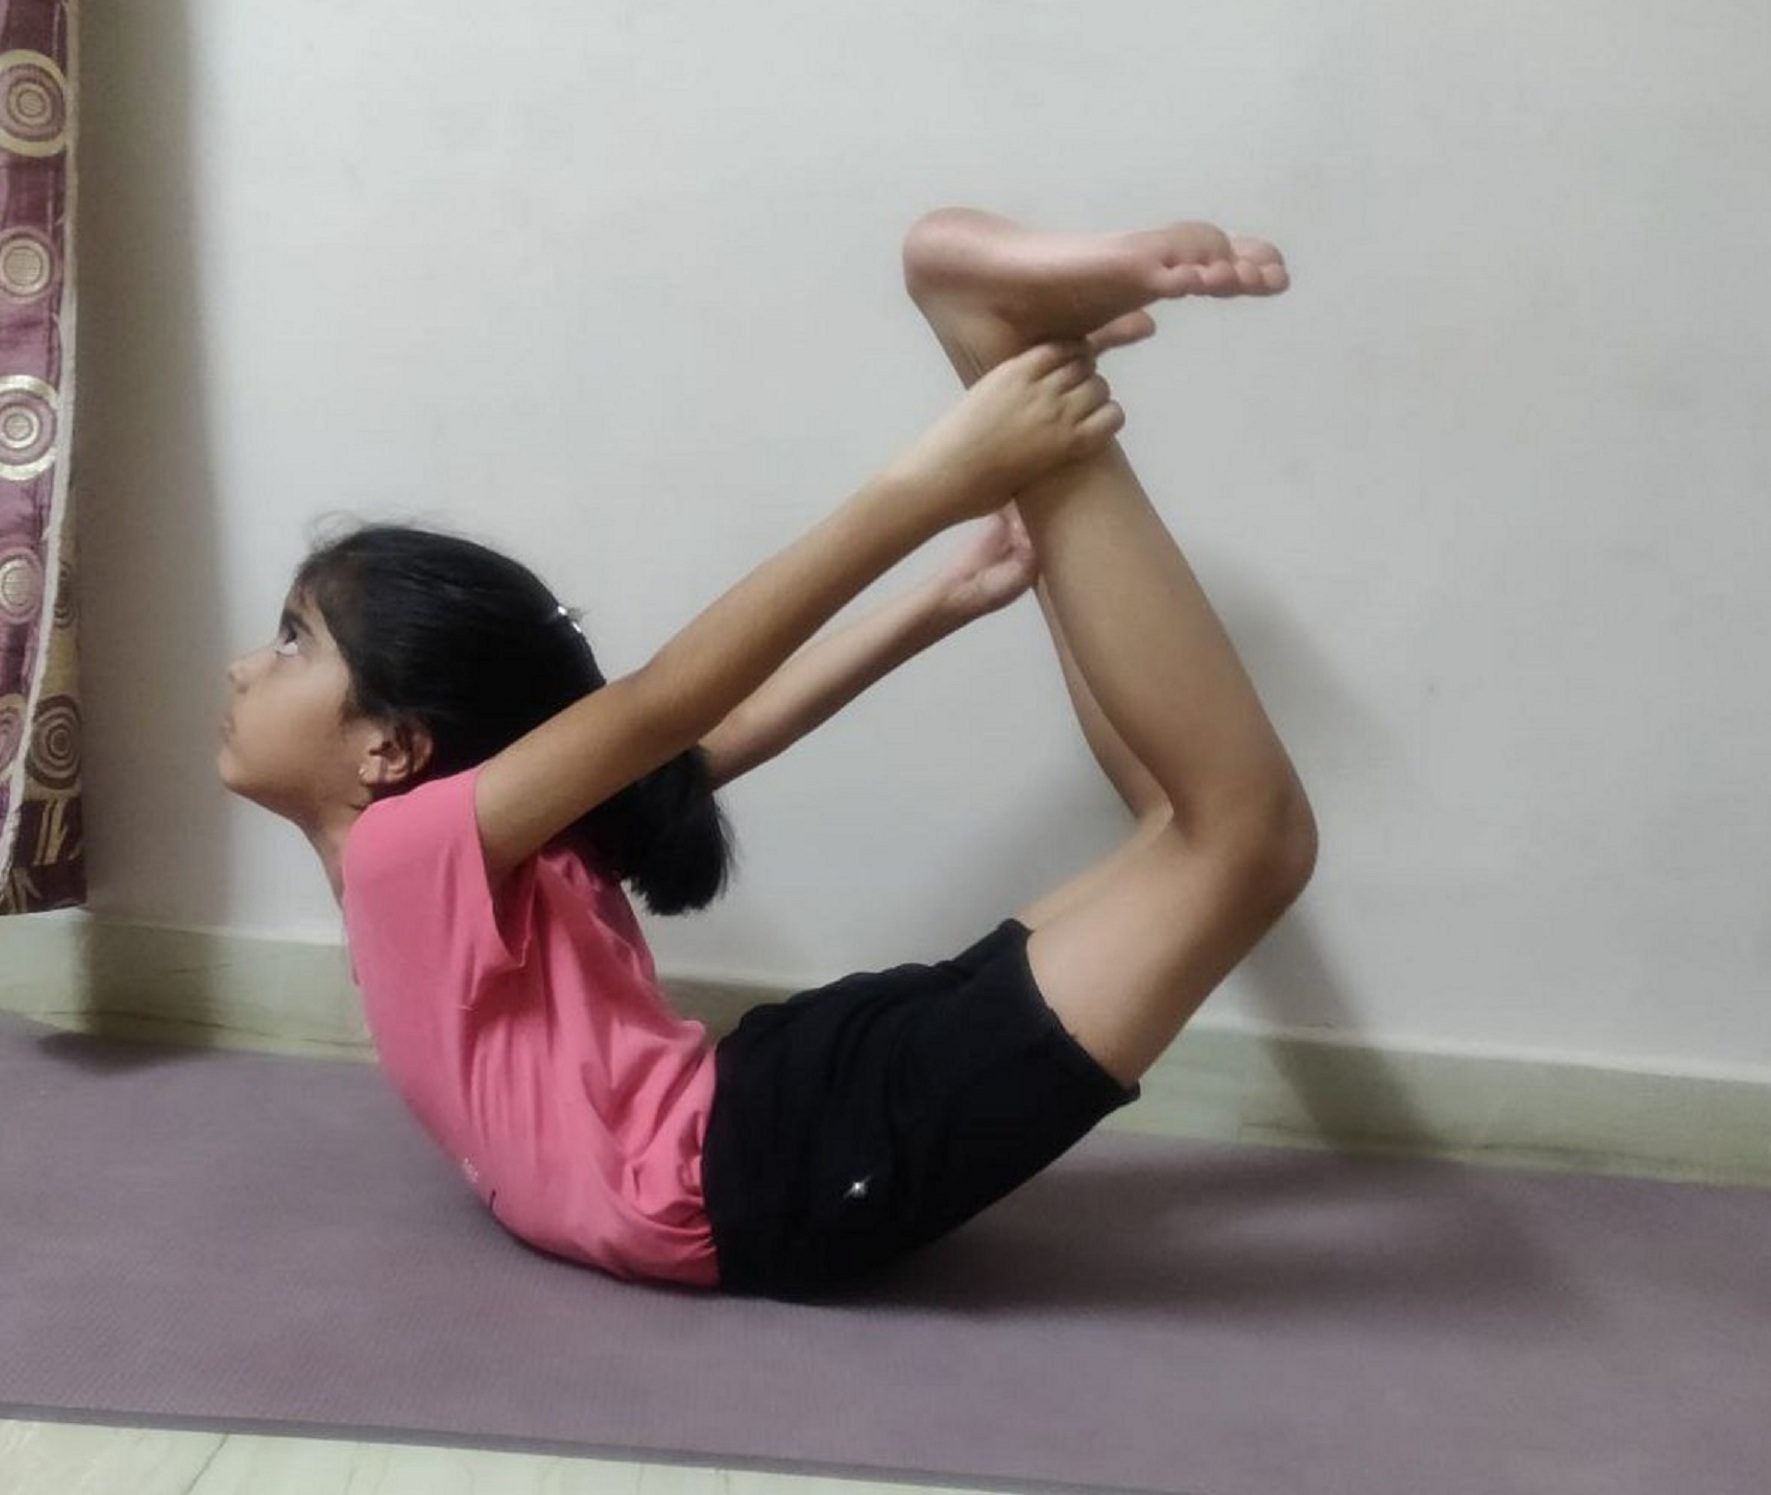 बच्चों की एकाग्रता के साथ लंबाई बढ़ाने में भी कारगर है यह योगासन